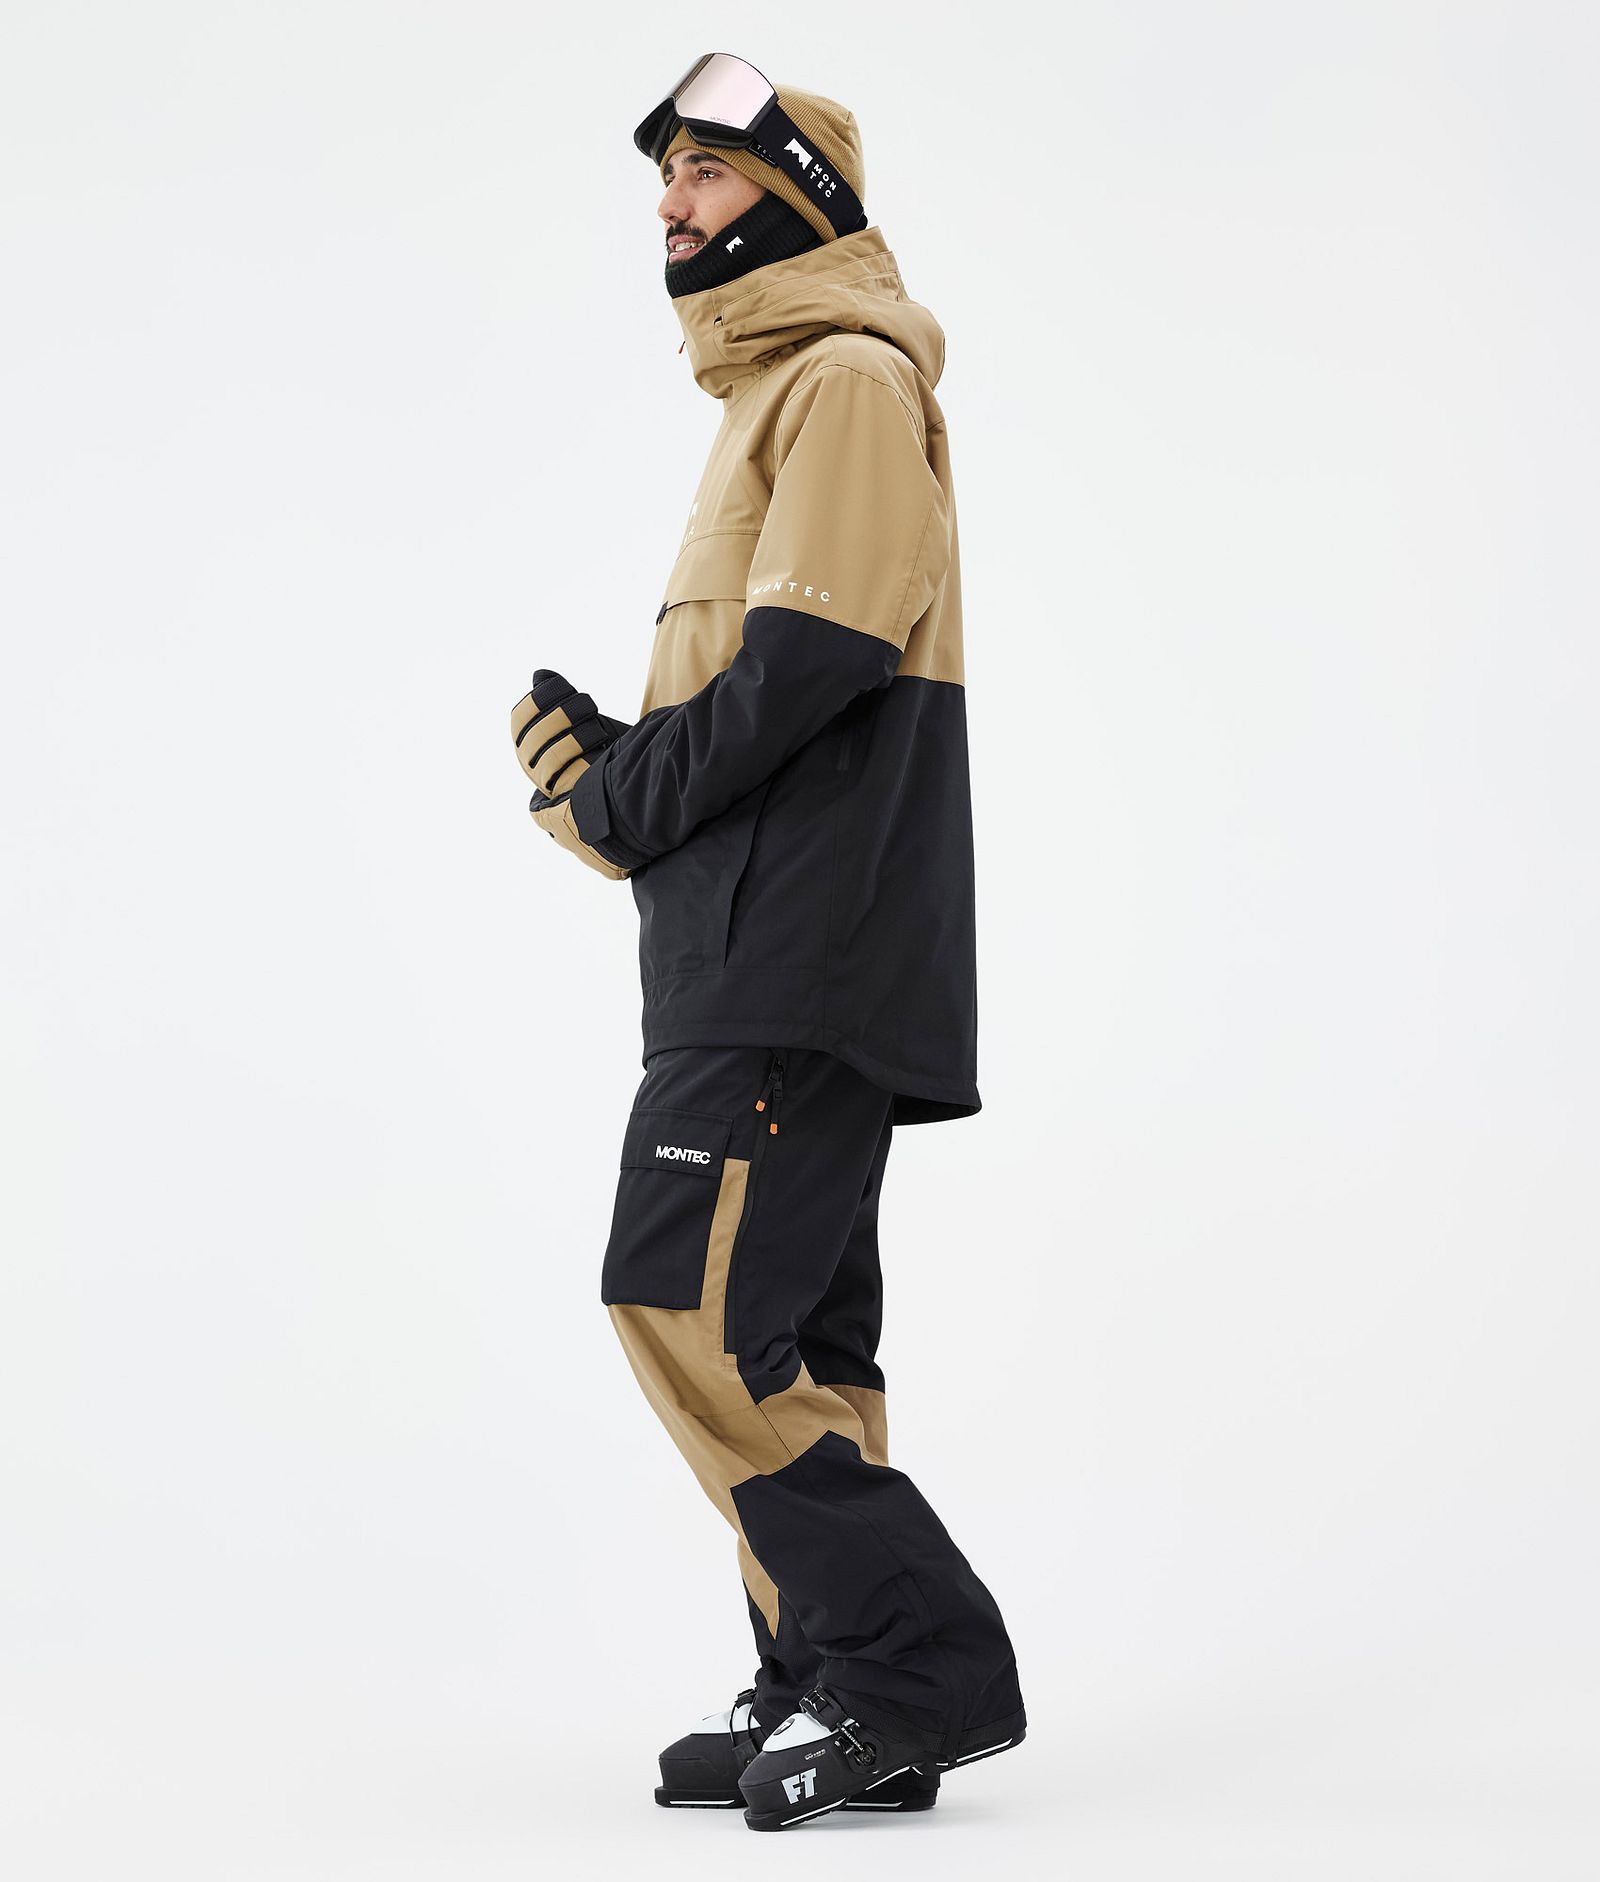 Dune スキージャケット メンズ Gold/Black